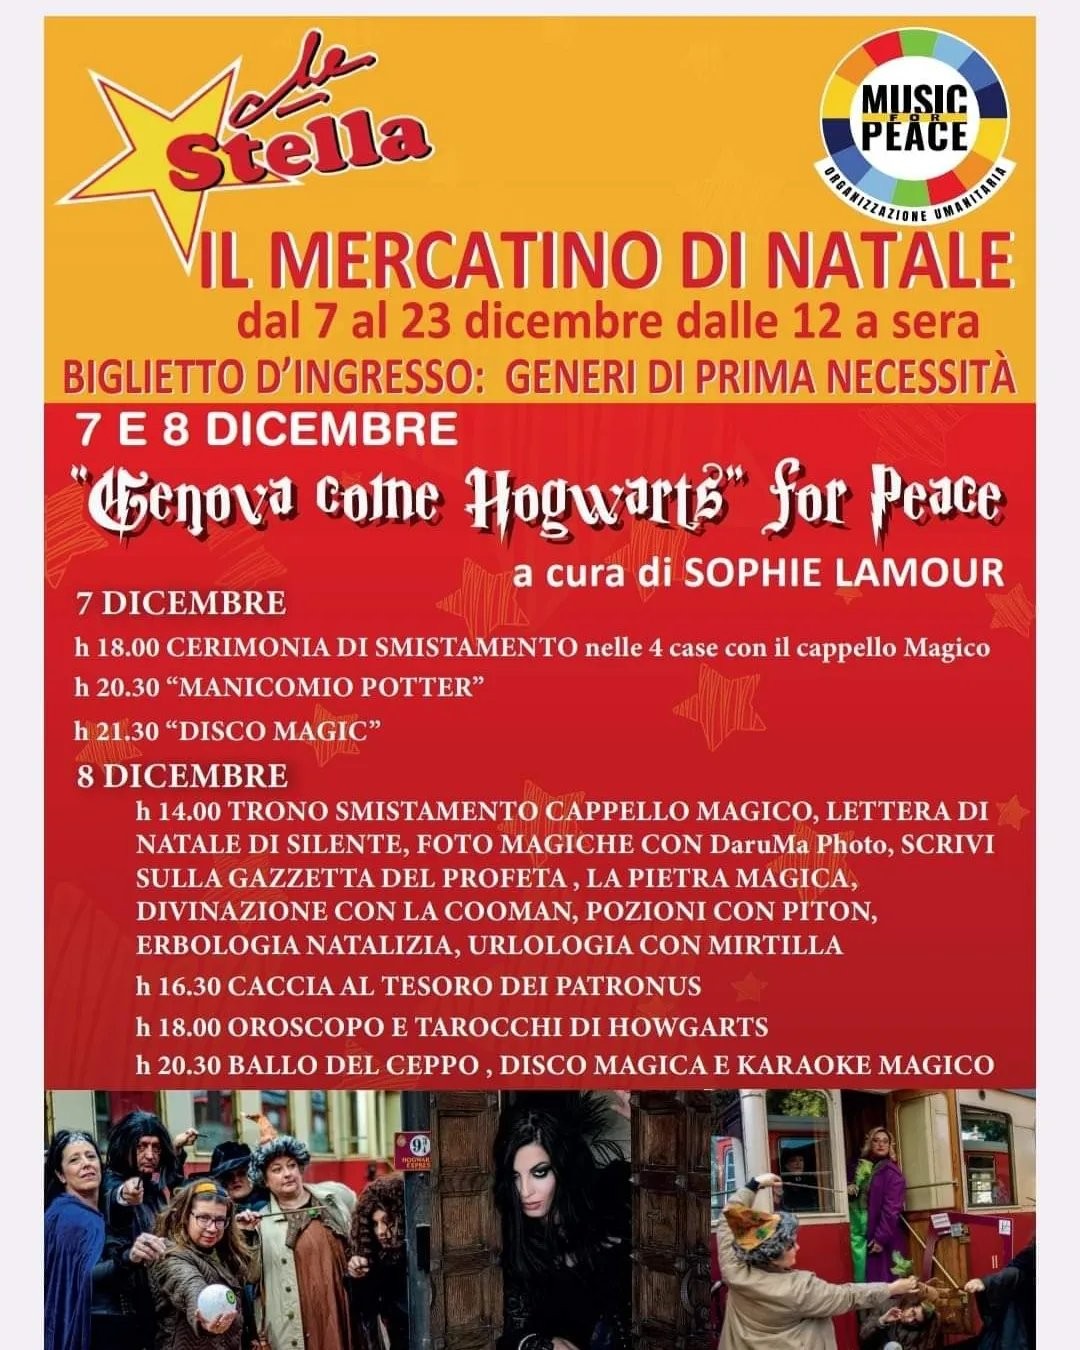 Genova come Hogwarts for Peace: 7 e 8 dicembre 2023